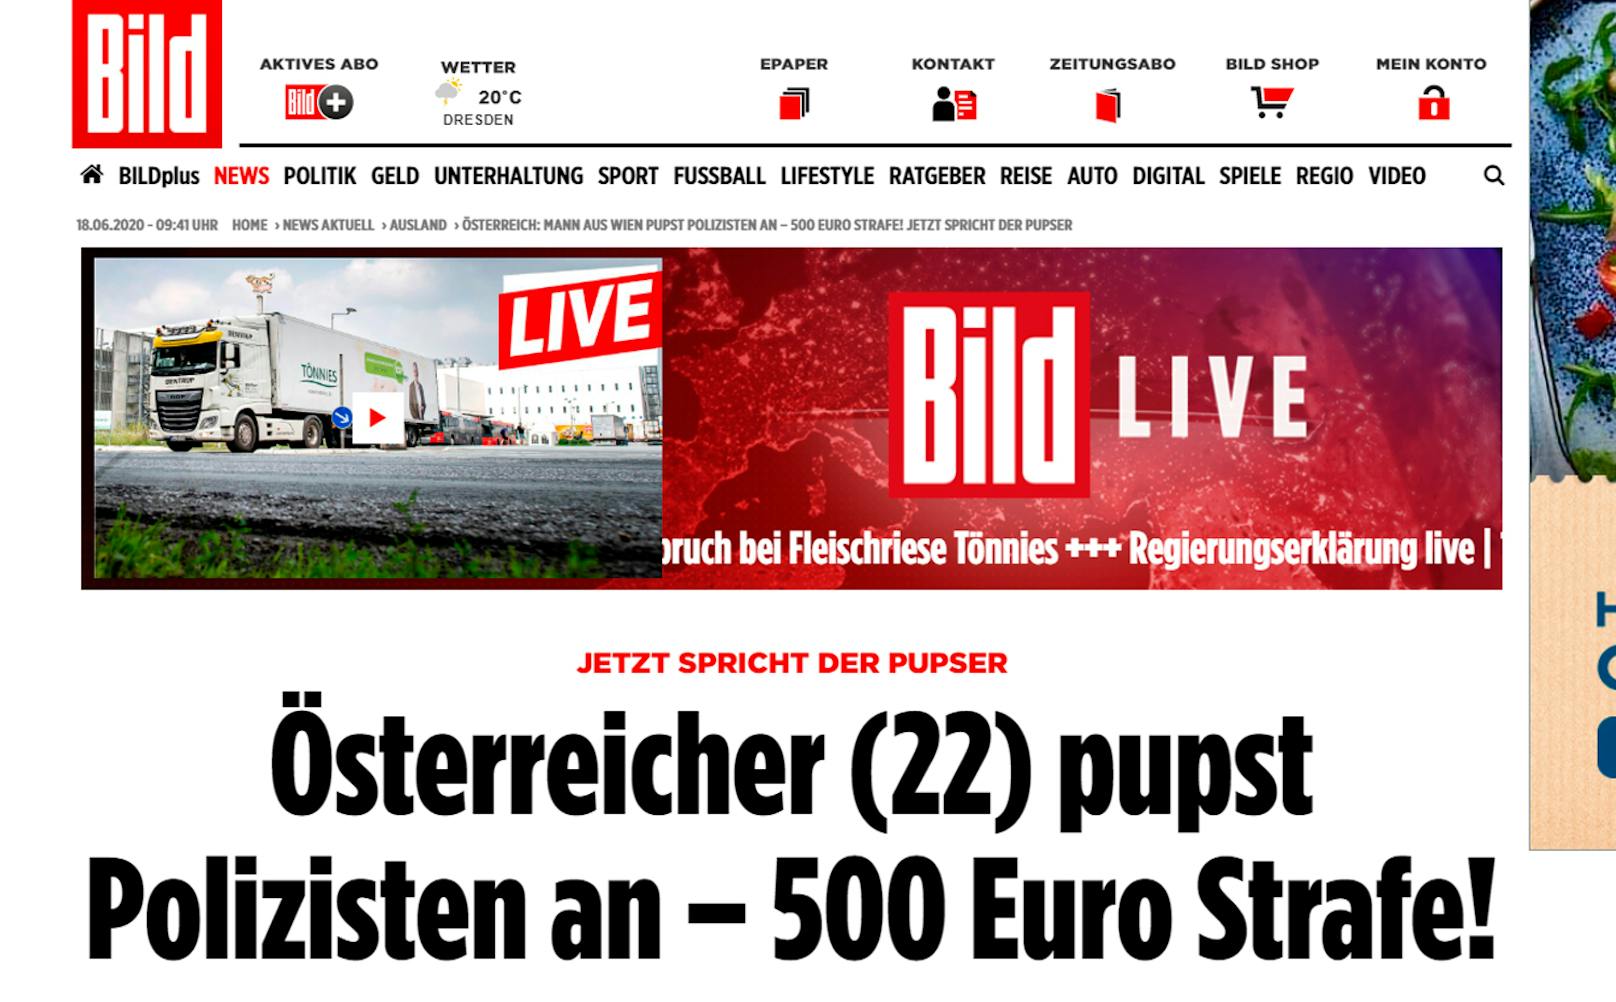 Jetzt geht die Causa um die Welt: "Österreicher (22) pupst Polizisten an", heißt es etwa bei der deutschen "Bild".